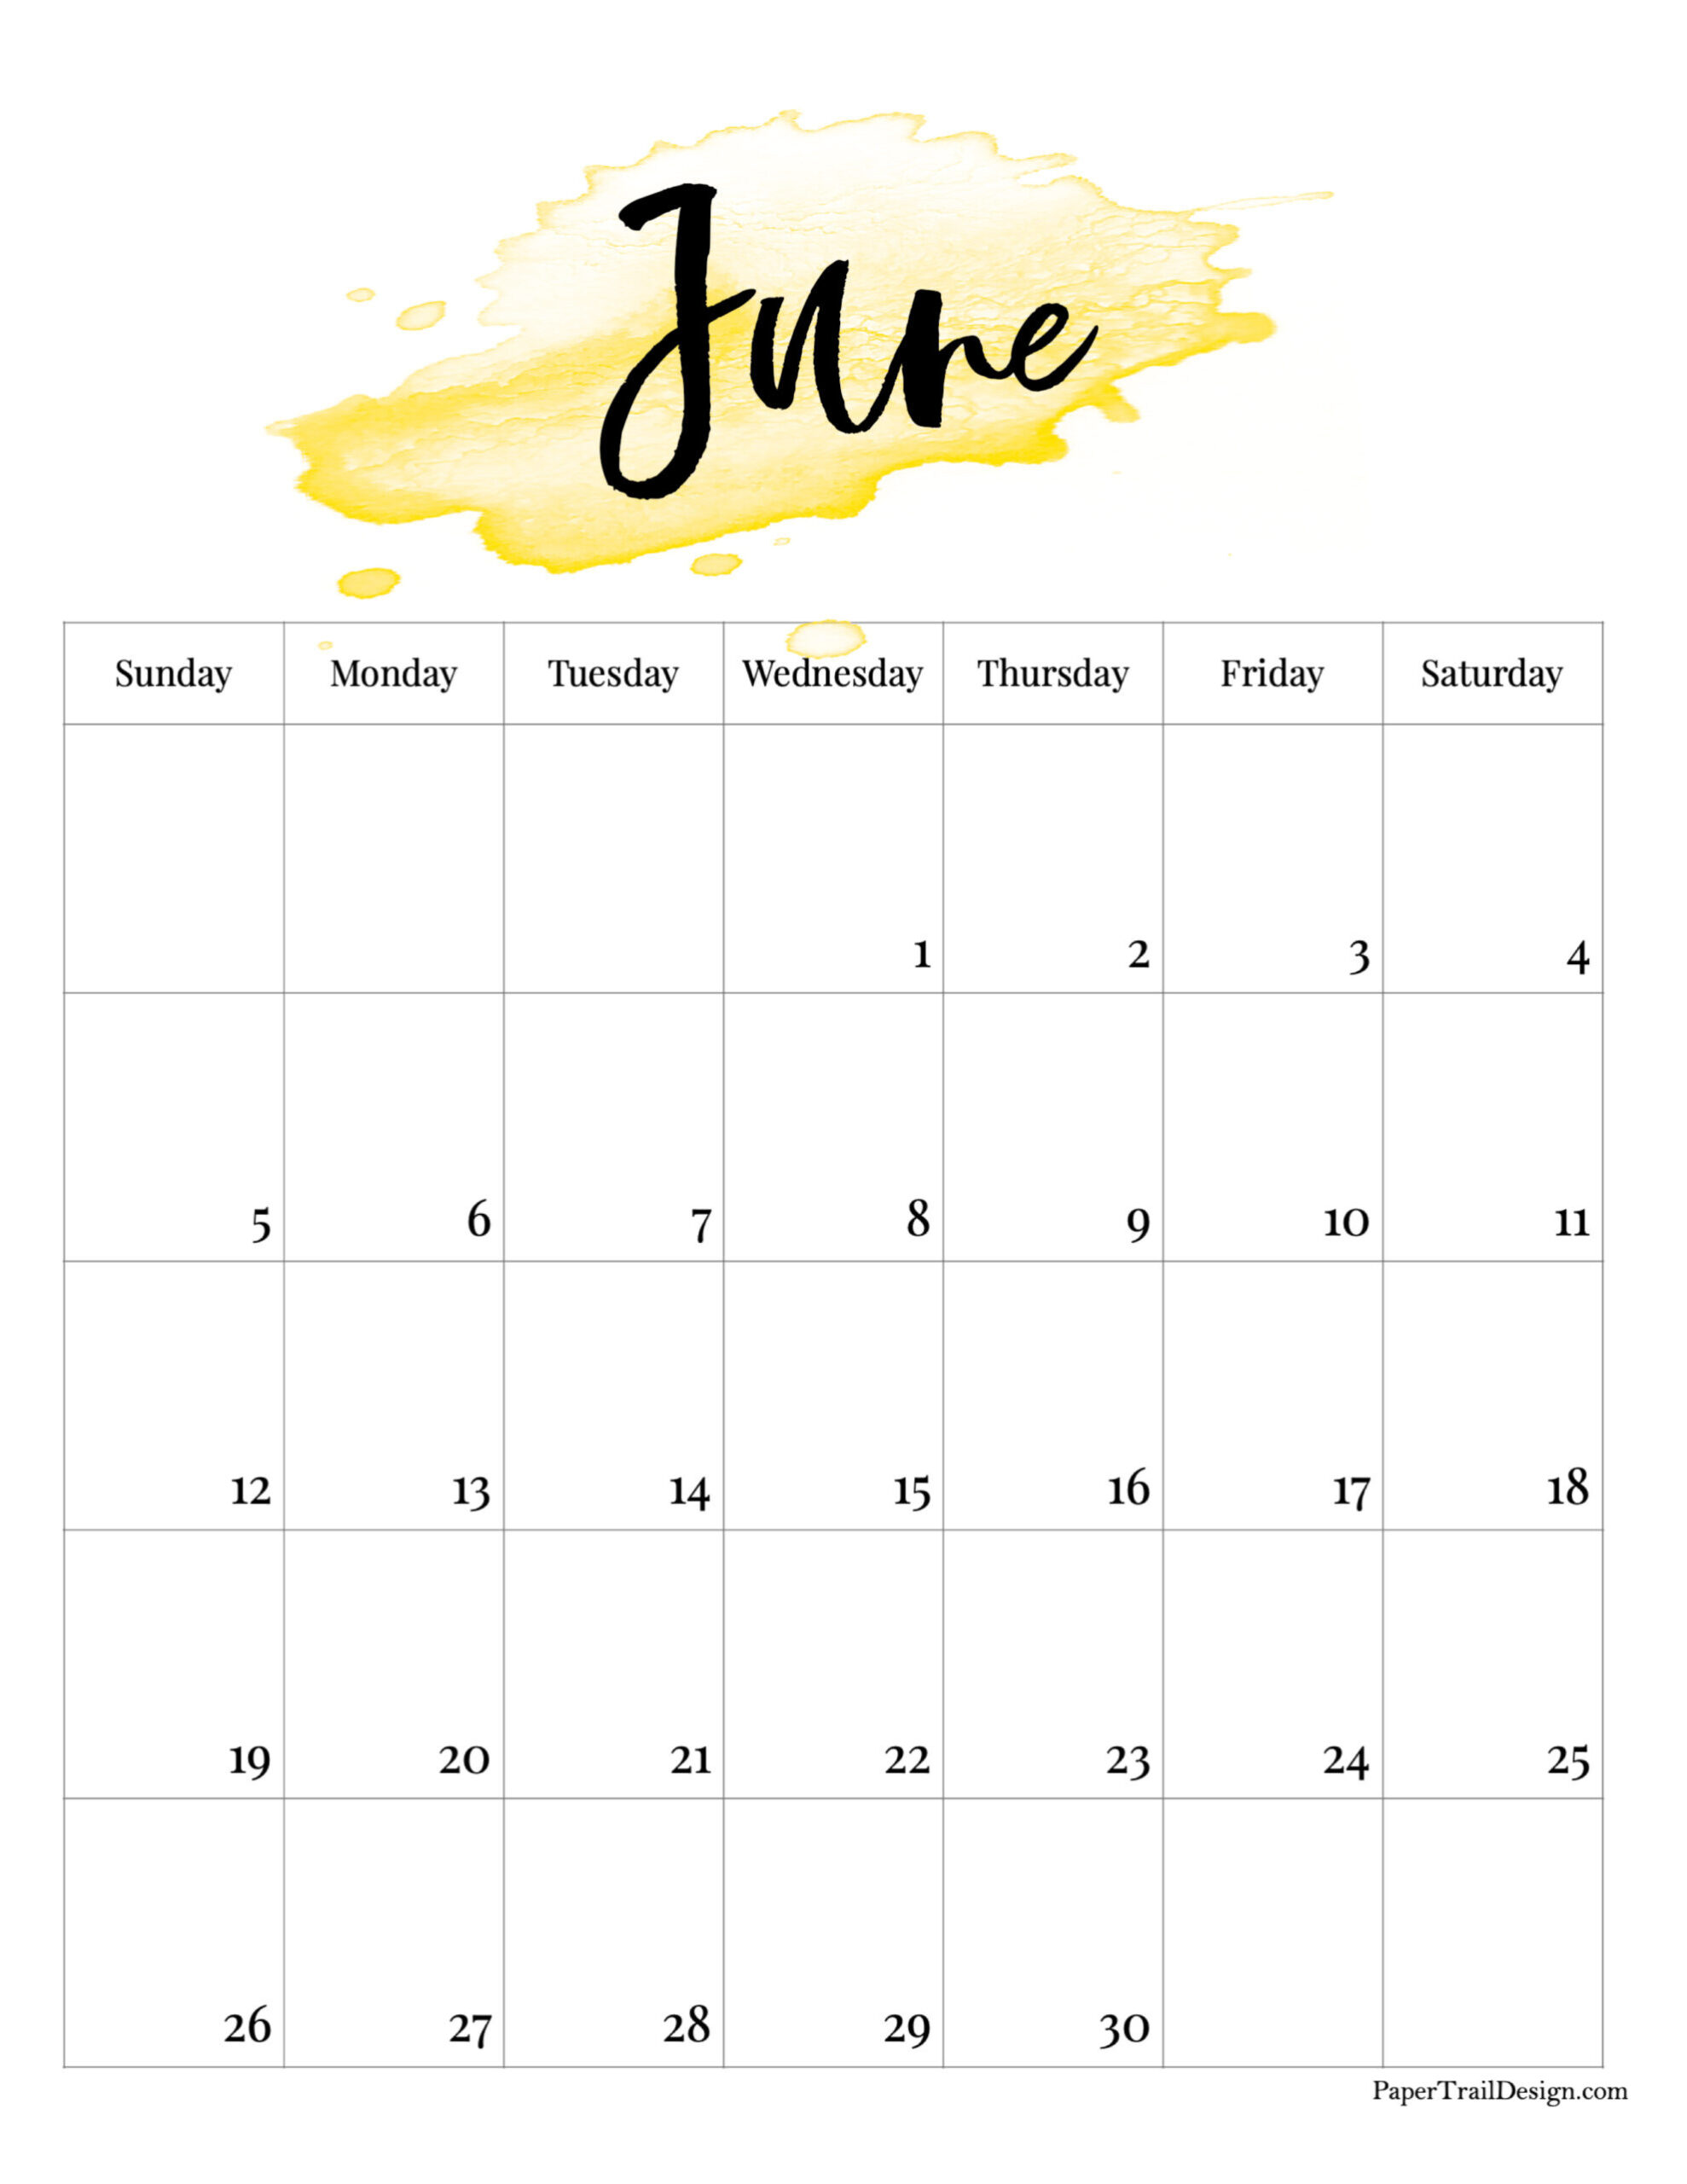 2022 Printable Calendar - Watercolor | Paper Trail Design  June Free Printable Calendar 2022